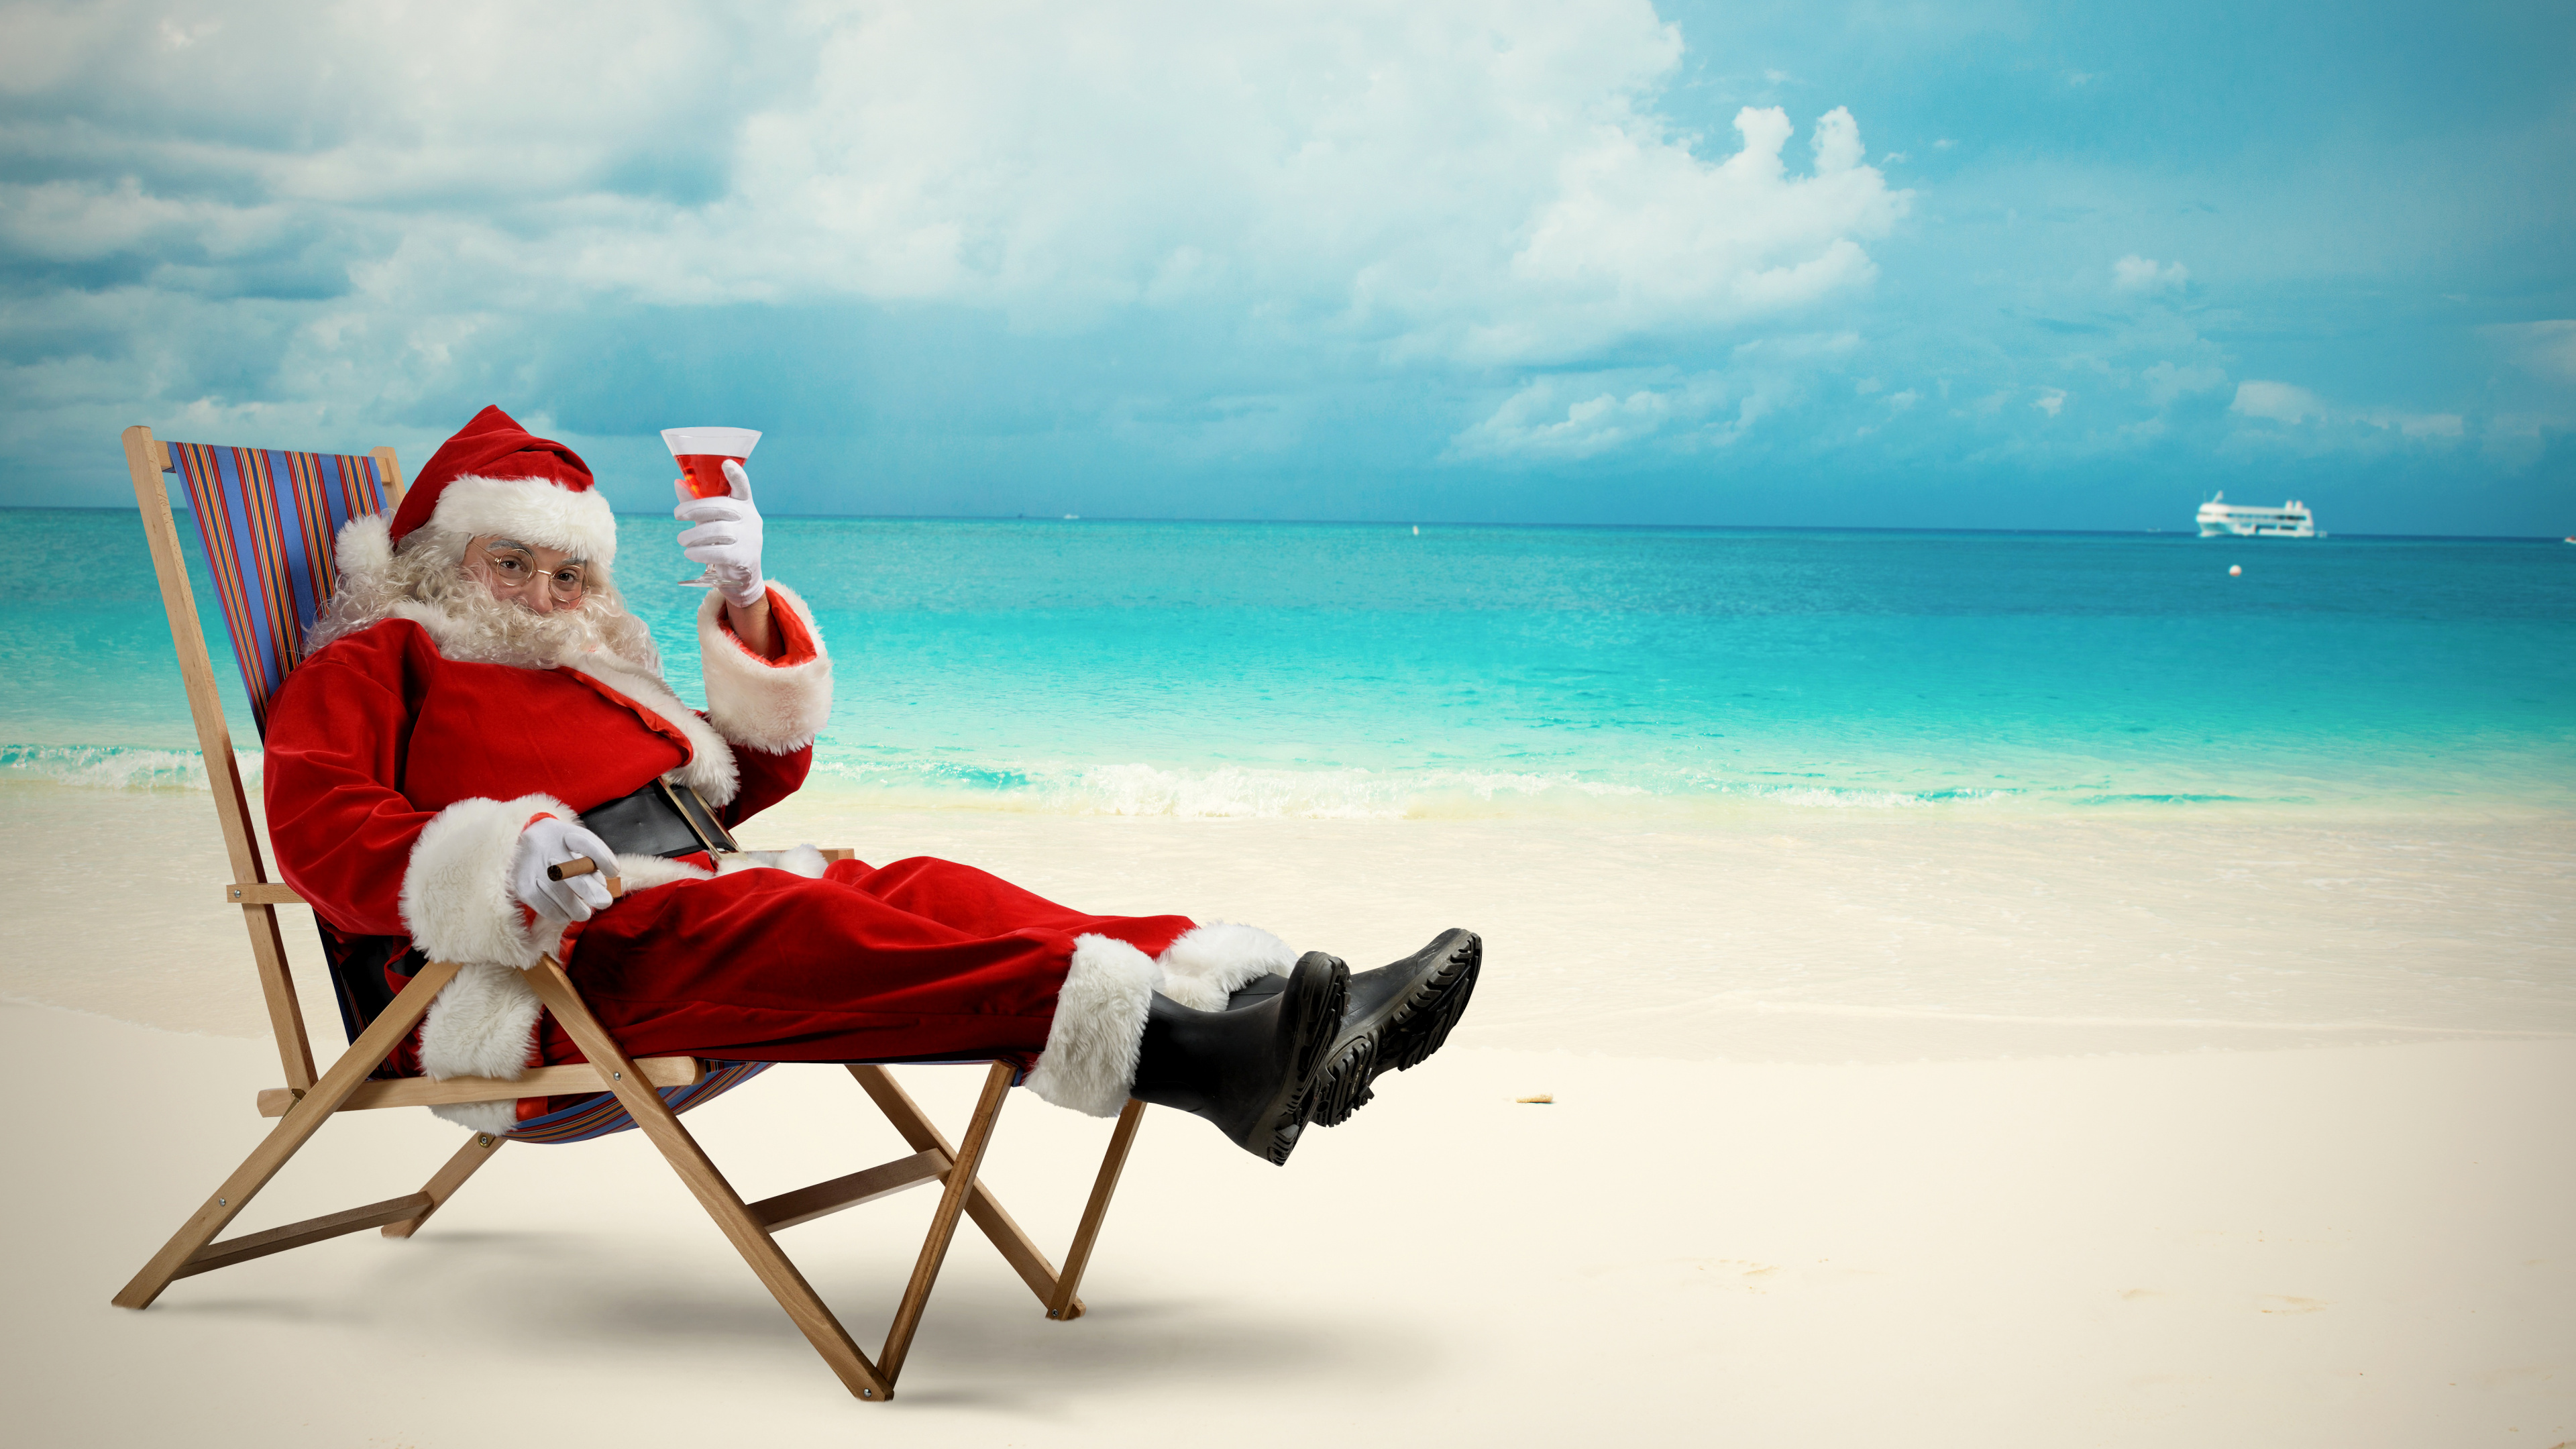 Santa Claus, Le Jour De Noël, Plage, Mer, Vacances. Wallpaper in 3840x2160 Resolution